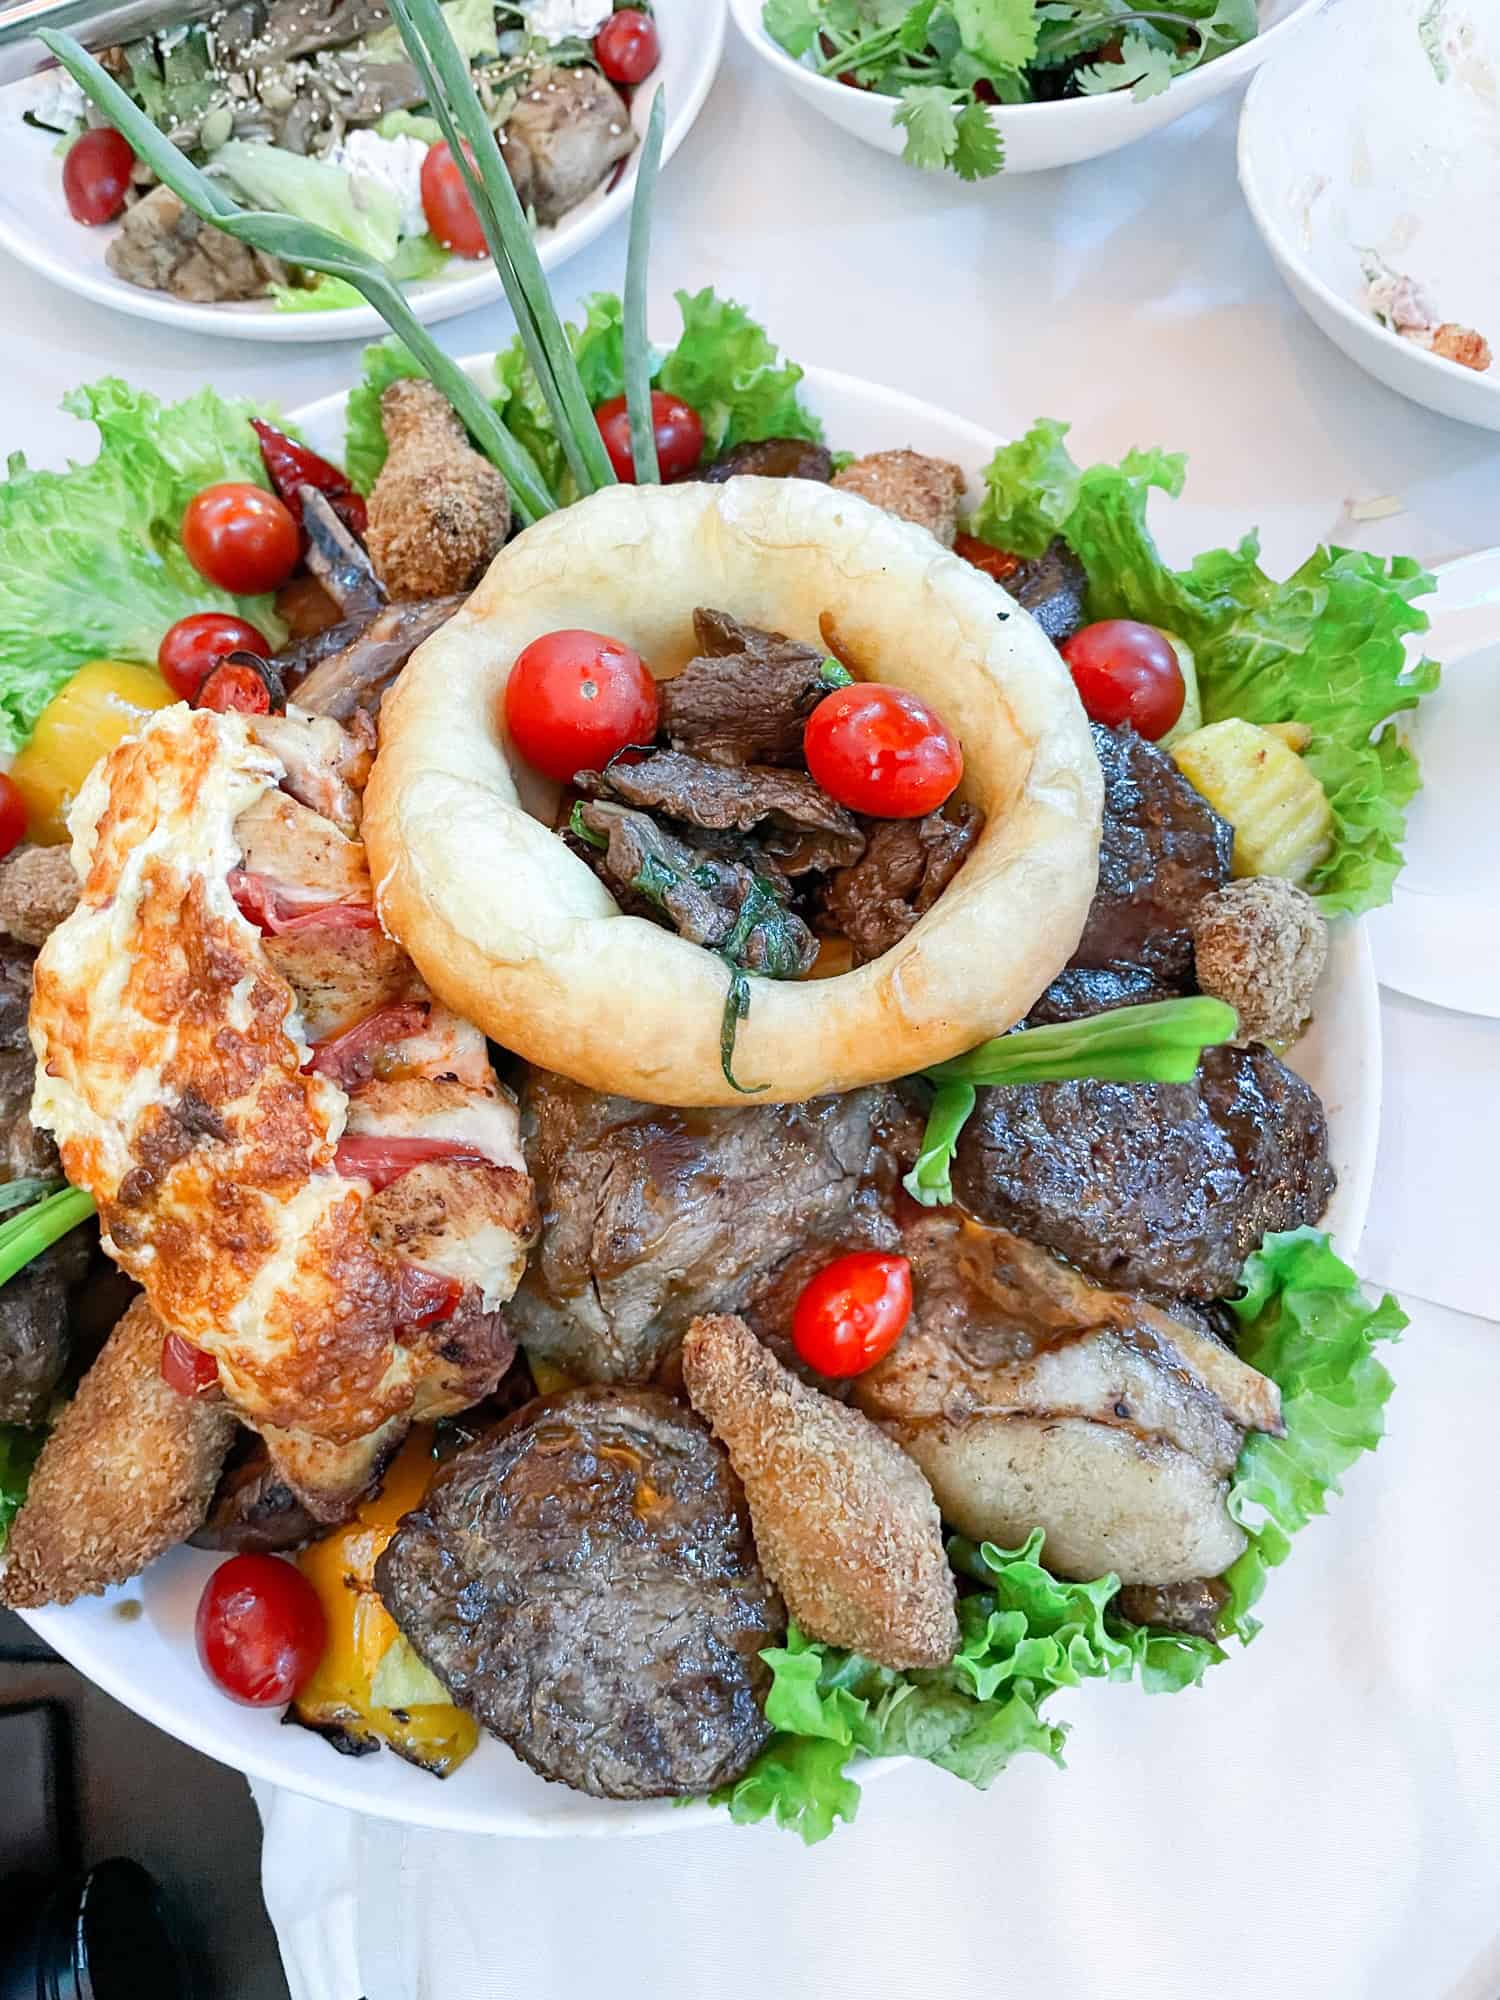 Kazakhstan - big pile of meat